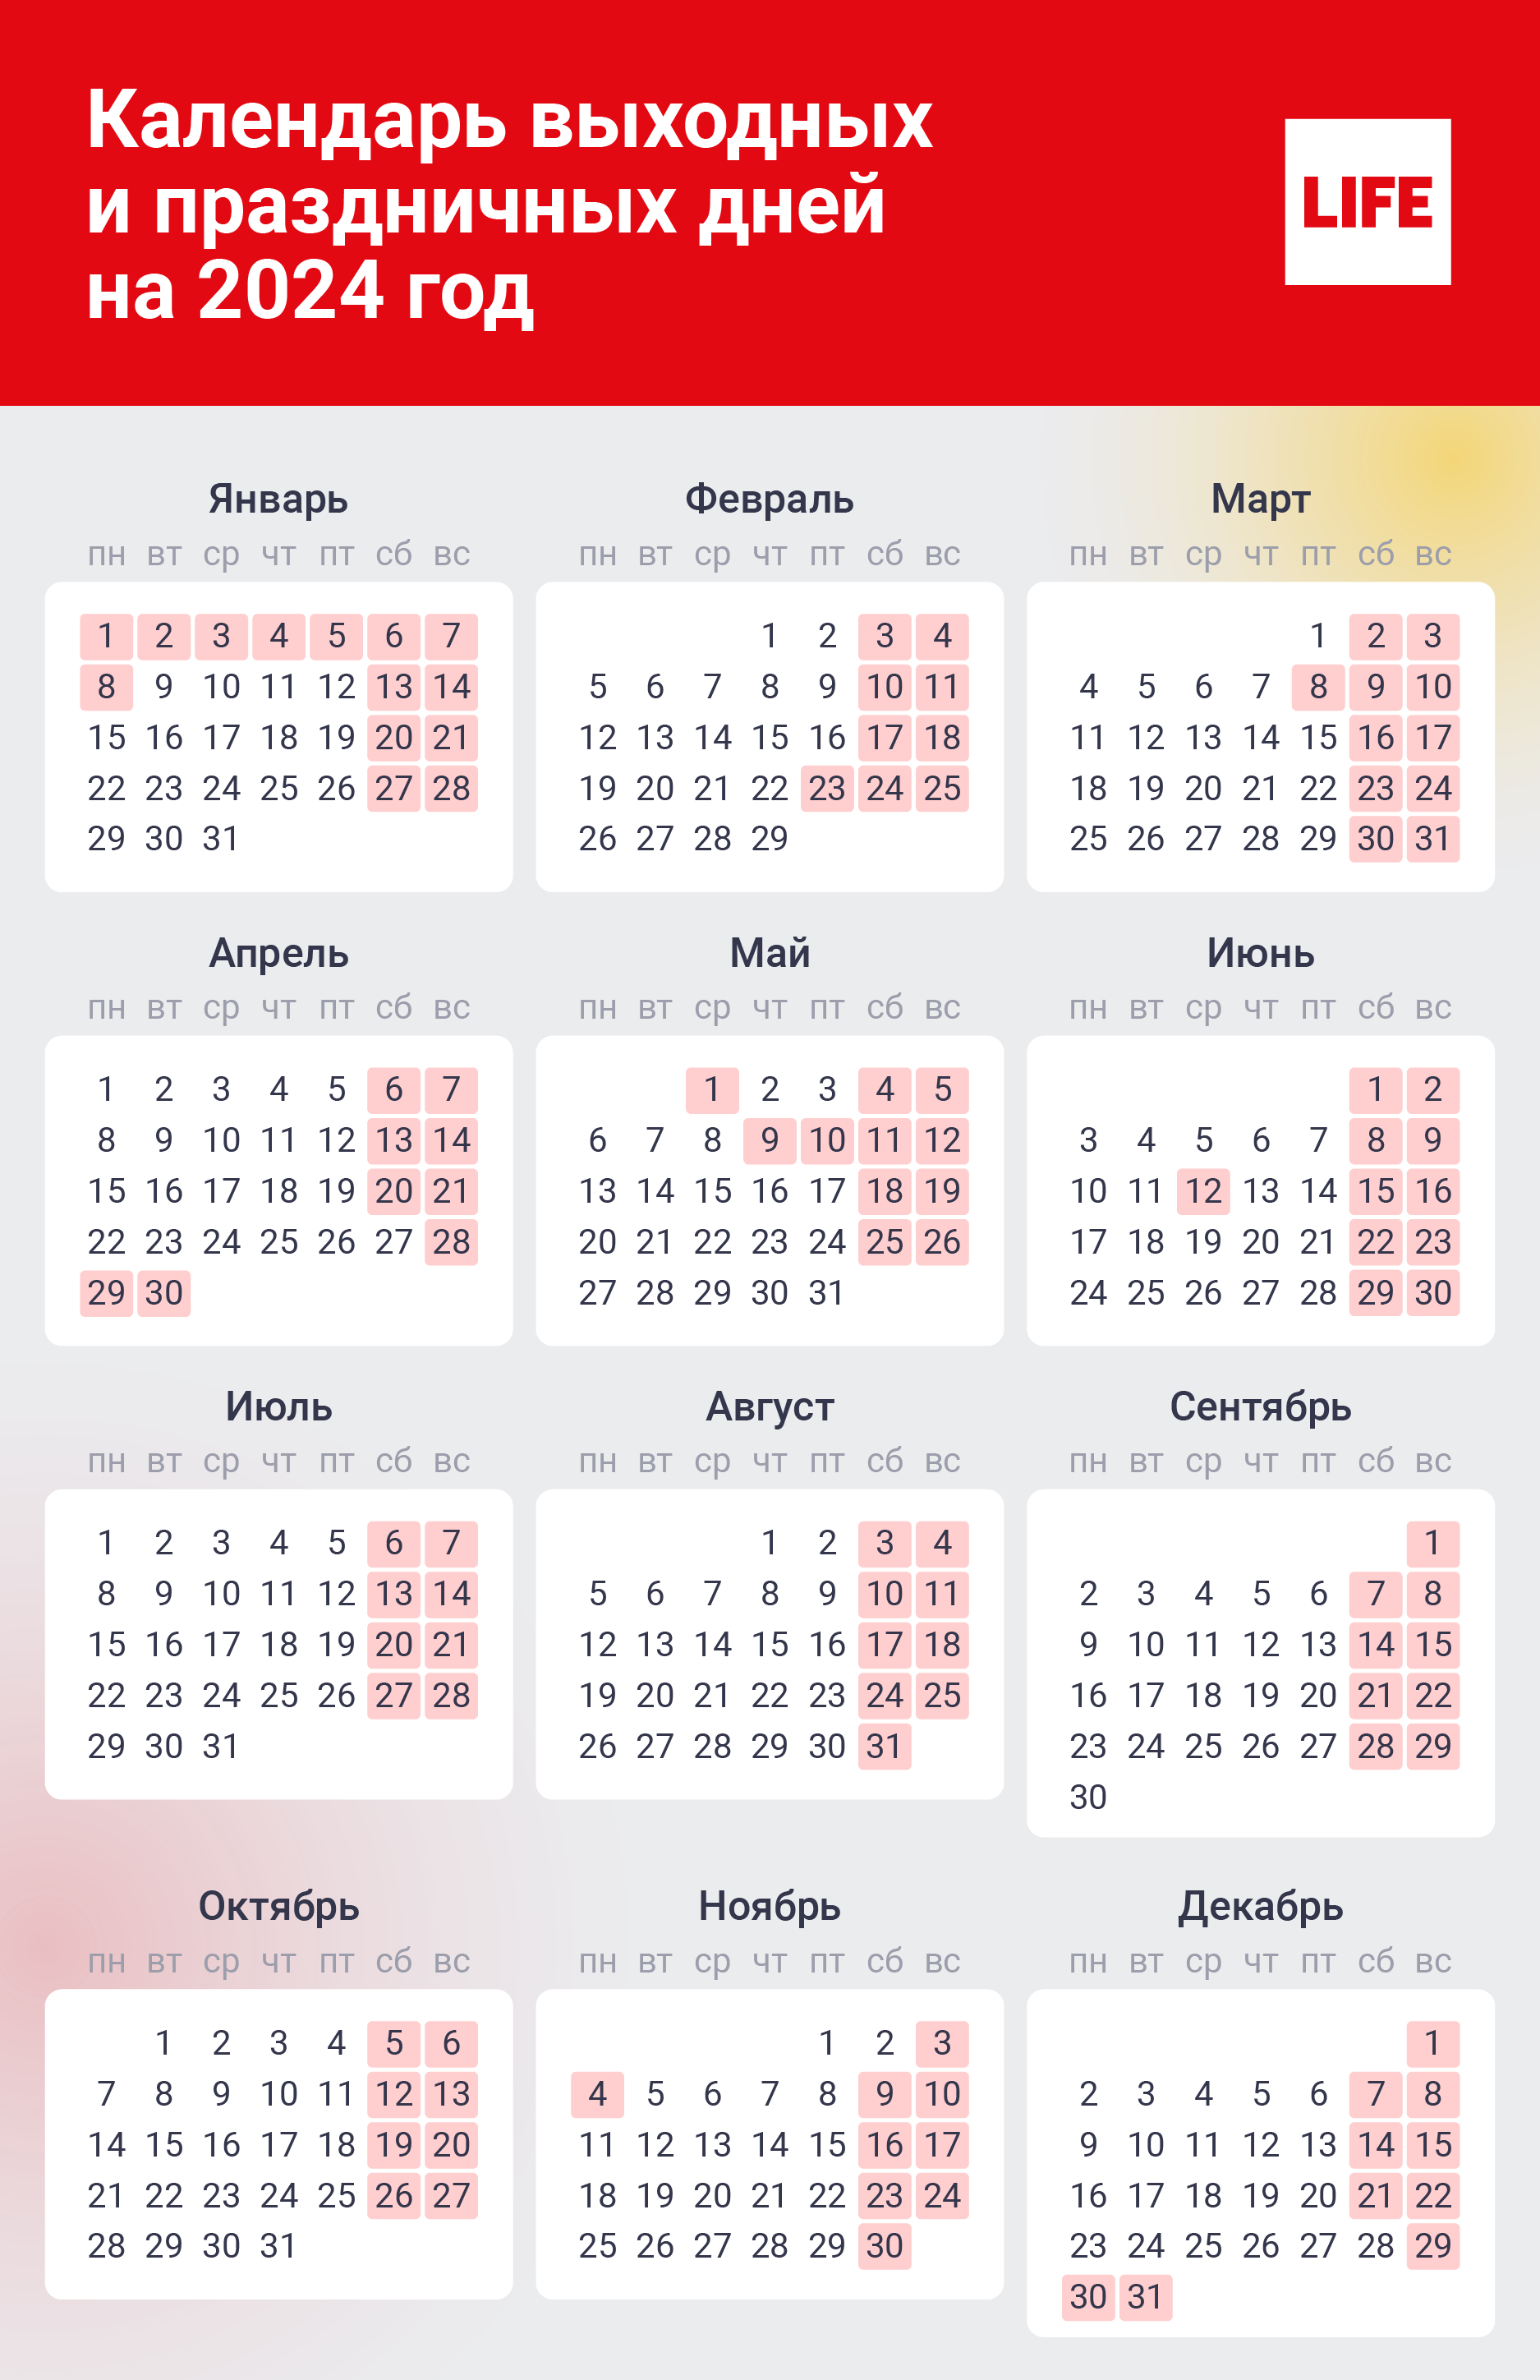 Календарь выходных и праздничных дней на 2024 год. Инфографика © LIFE